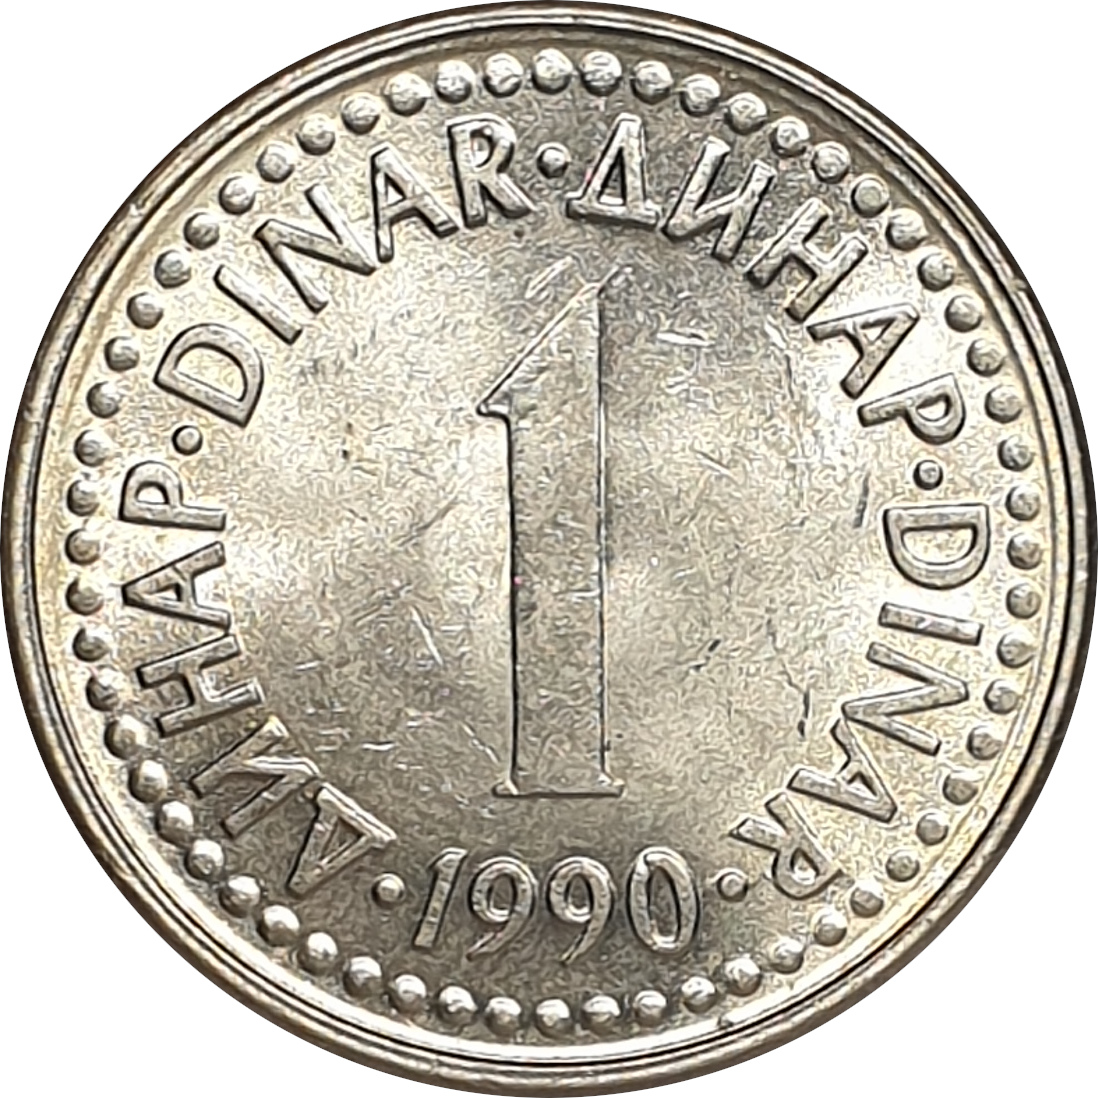 1 dinar - Série 1990